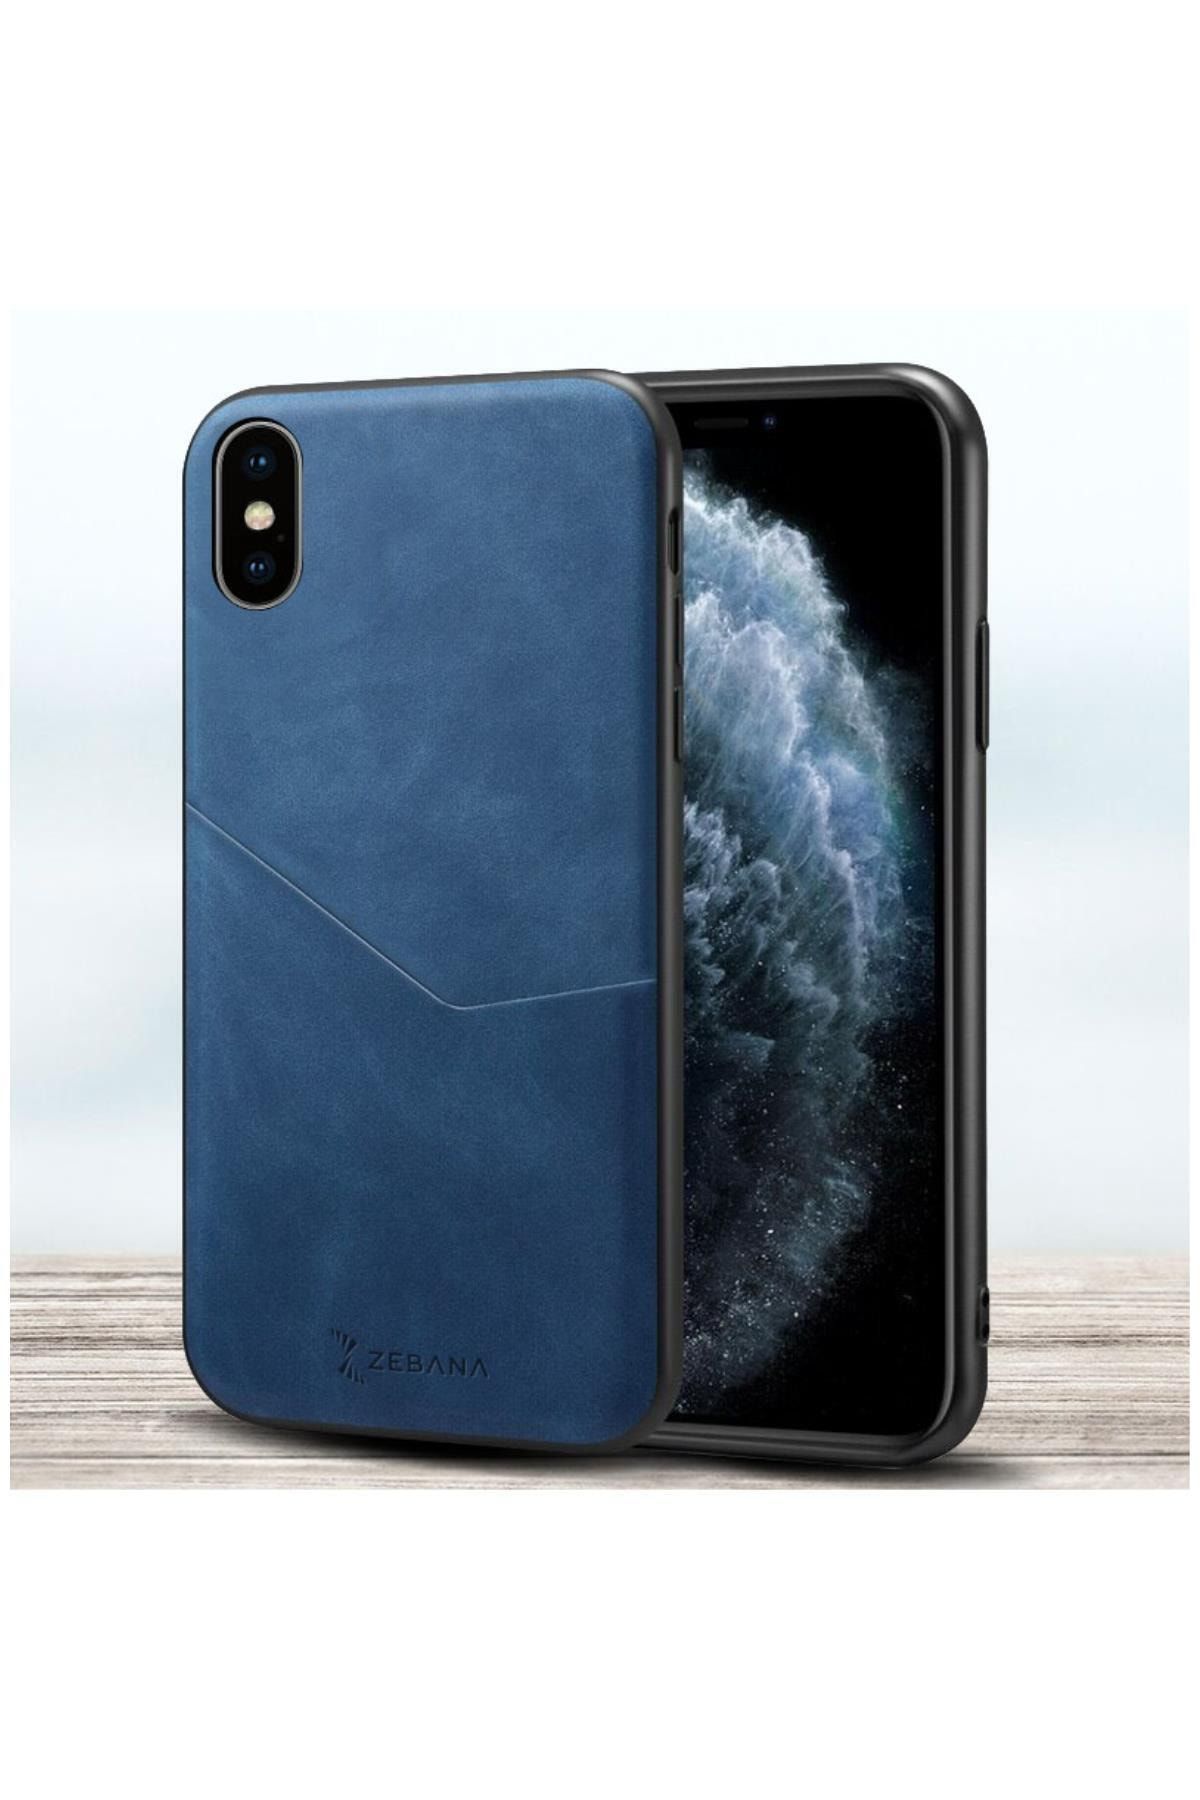 Dara Aksesuar Apple Iphone Xs Max Uyumlu Telefon Kılıfı Zebana Cepli Nubuk Kılıf Mavi